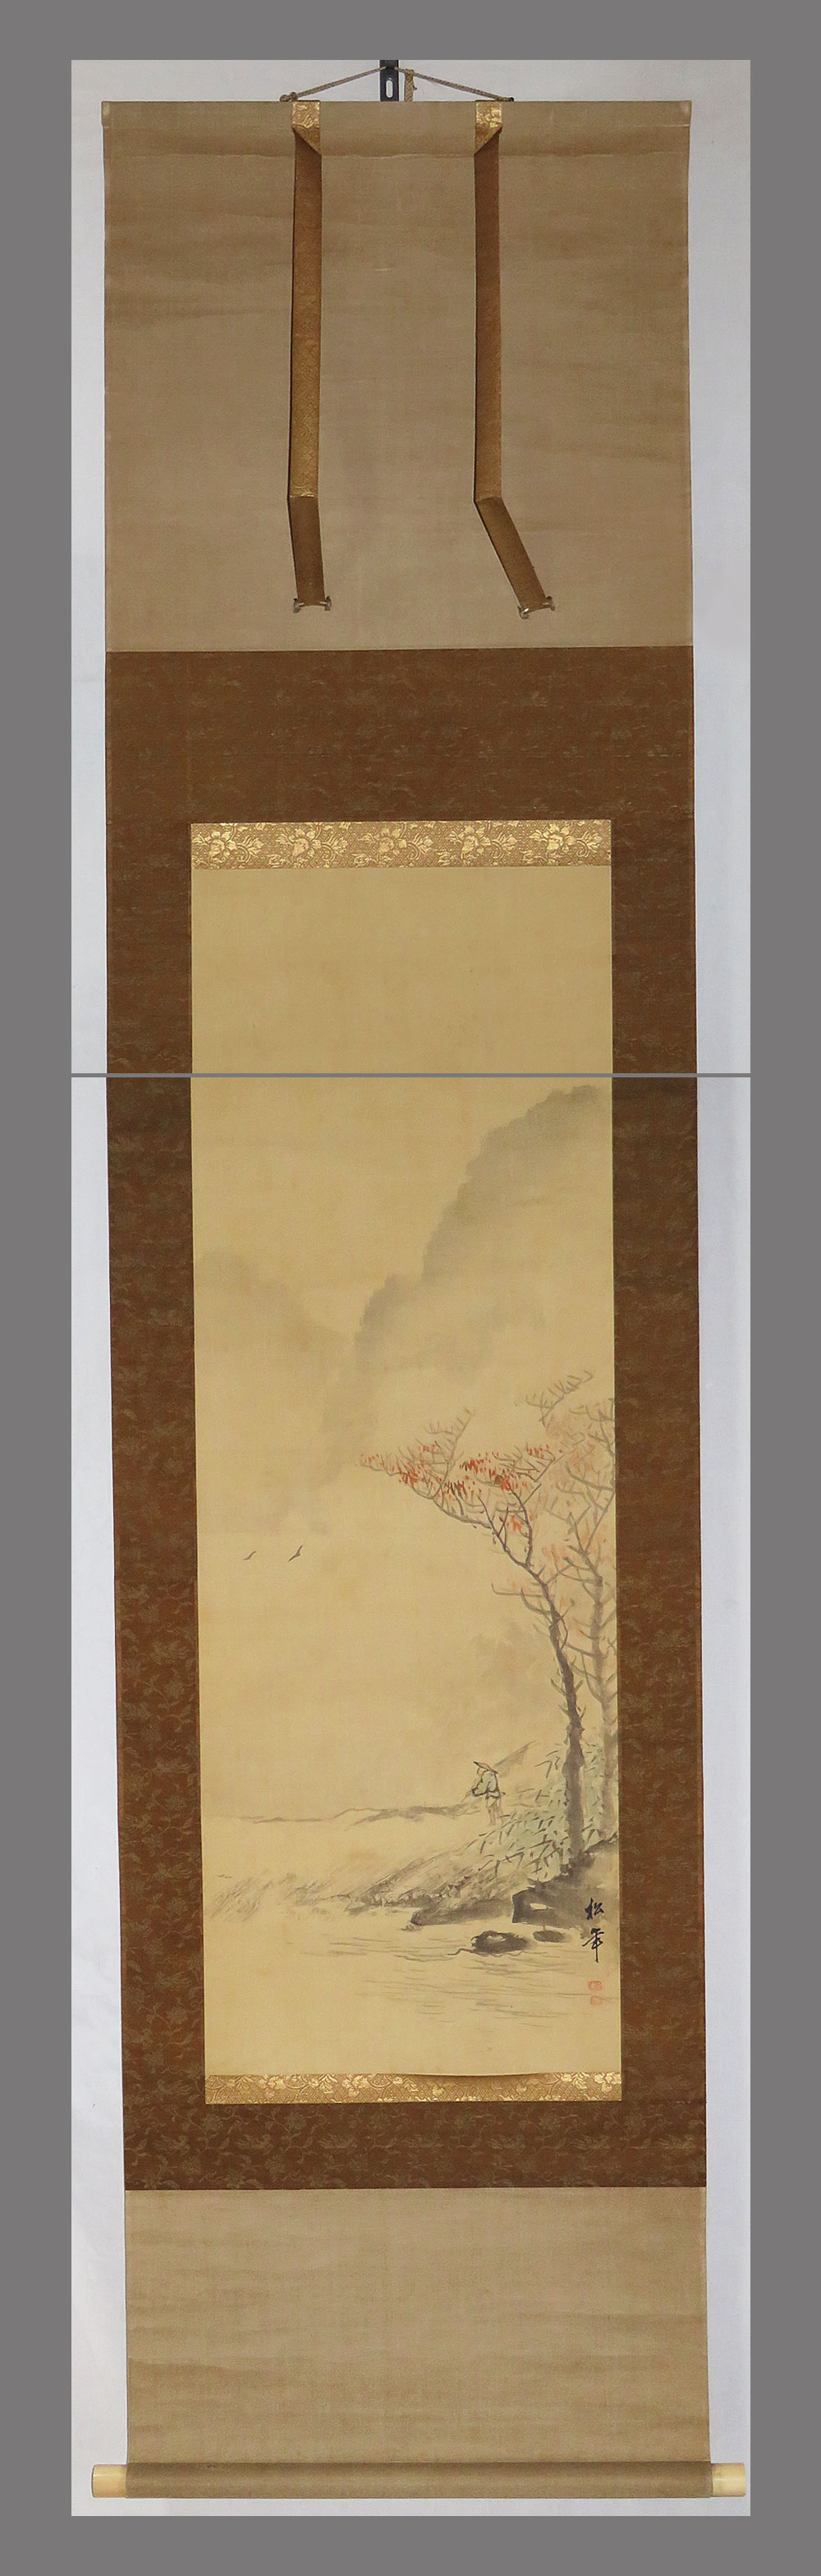 日本画家 後藤芳仙『むさし野』絹本 茶掛け 共箱 - 美術品